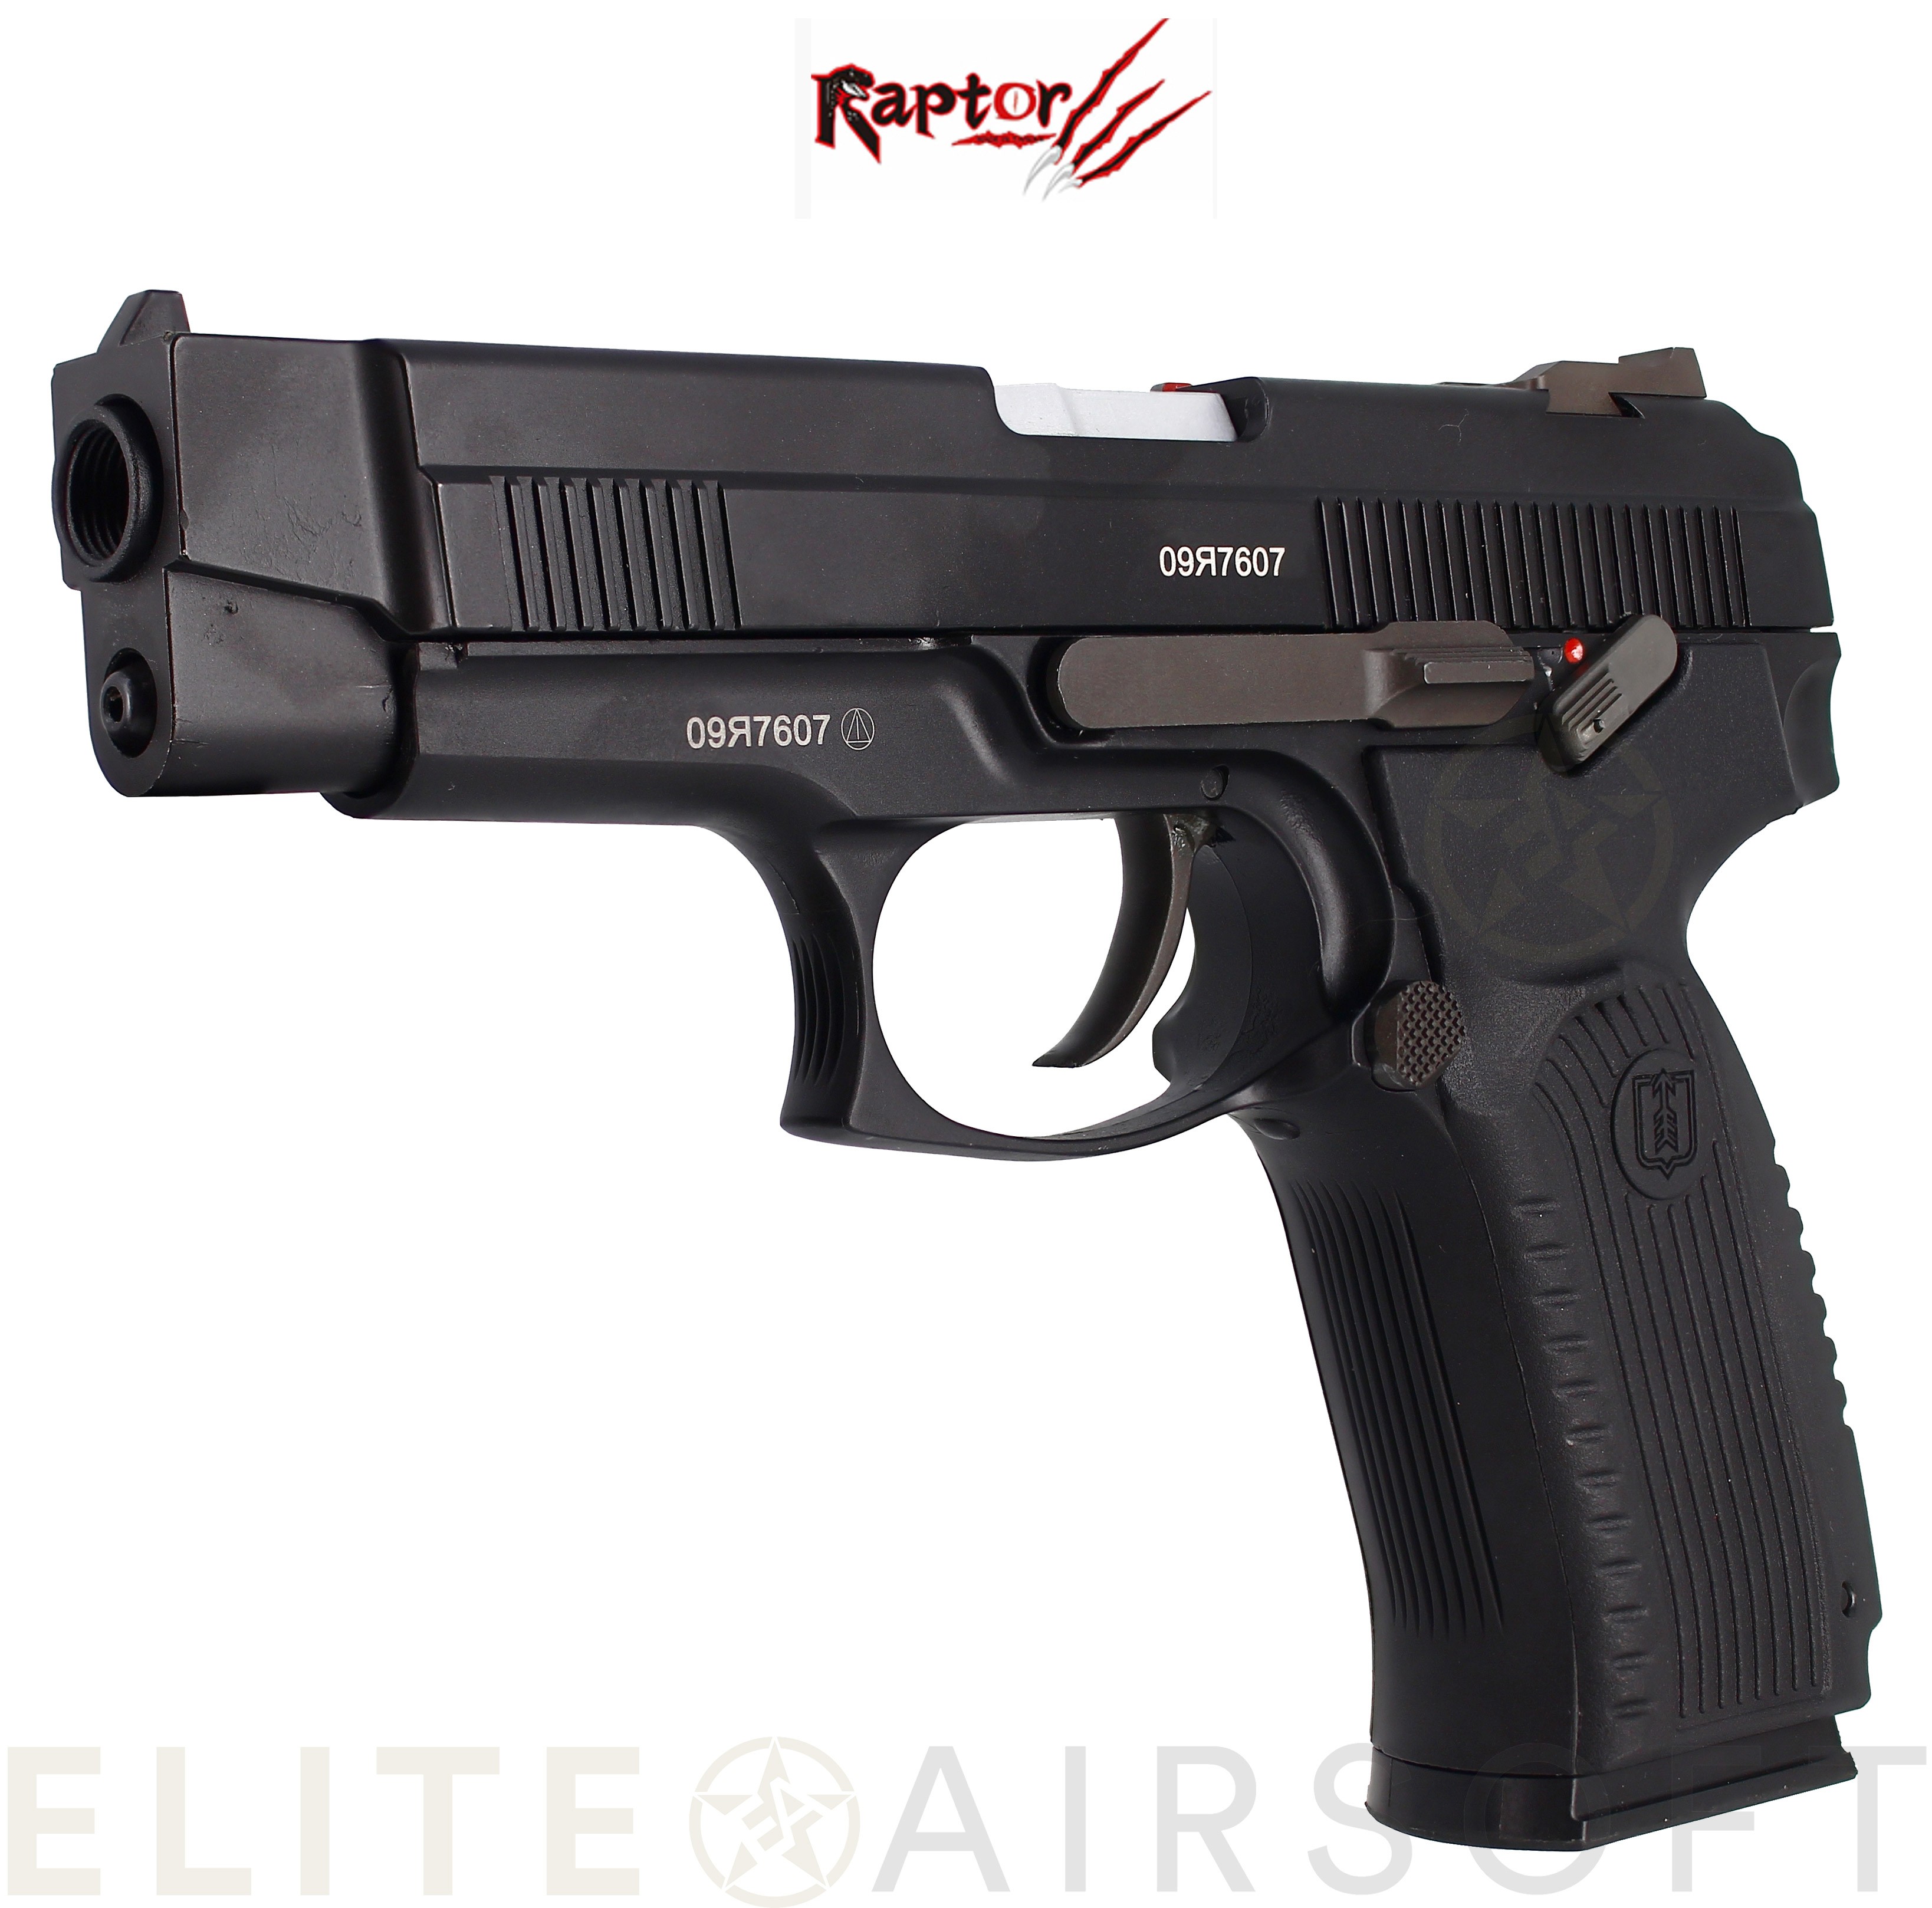 Raptor - Pistolet MP443 - GBB - GAZ - Noir (1 Joule) - Elite Airsoft